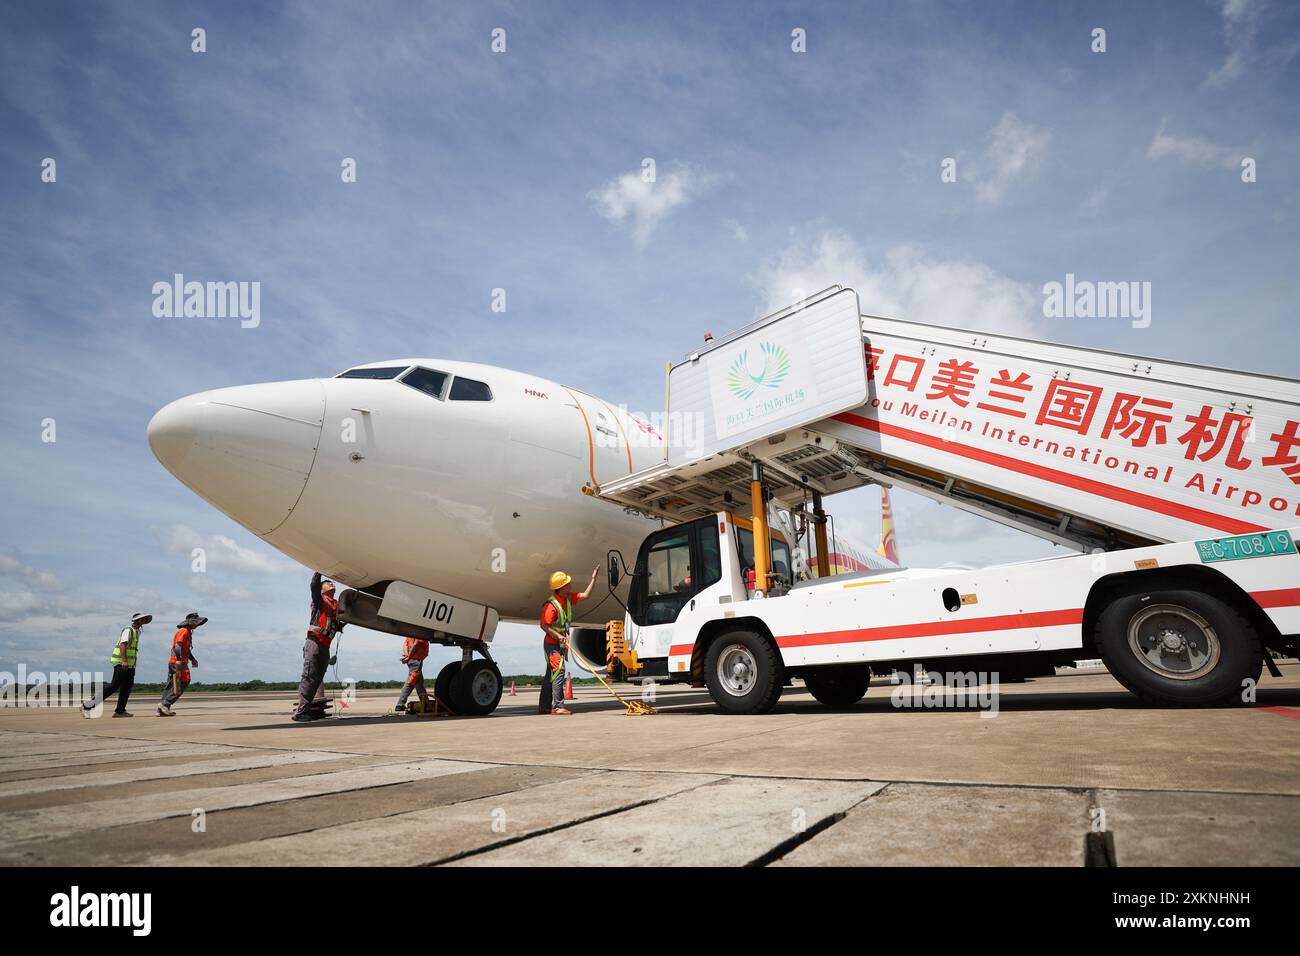 Haikou, province chinoise de Hainan. 23 juillet 2024. Des membres du personnel vérifient un avion à l'aéroport international de Meilan à Haikou, dans la province de Hainan, au sud de la Chine, le 23 juillet 2024. L’aéroport international de Meilan a connu une augmentation constante de son flux de passagers depuis le début de cet été. Les membres du personnel de HNA (Hainan Airline) Technic parviennent à assurer la sécurité des vols grâce à des contrôles de maintenance minutieux pendant la haute saison. Crédit : Zhang Liyun/Xinhua/Alamy Live News Banque D'Images